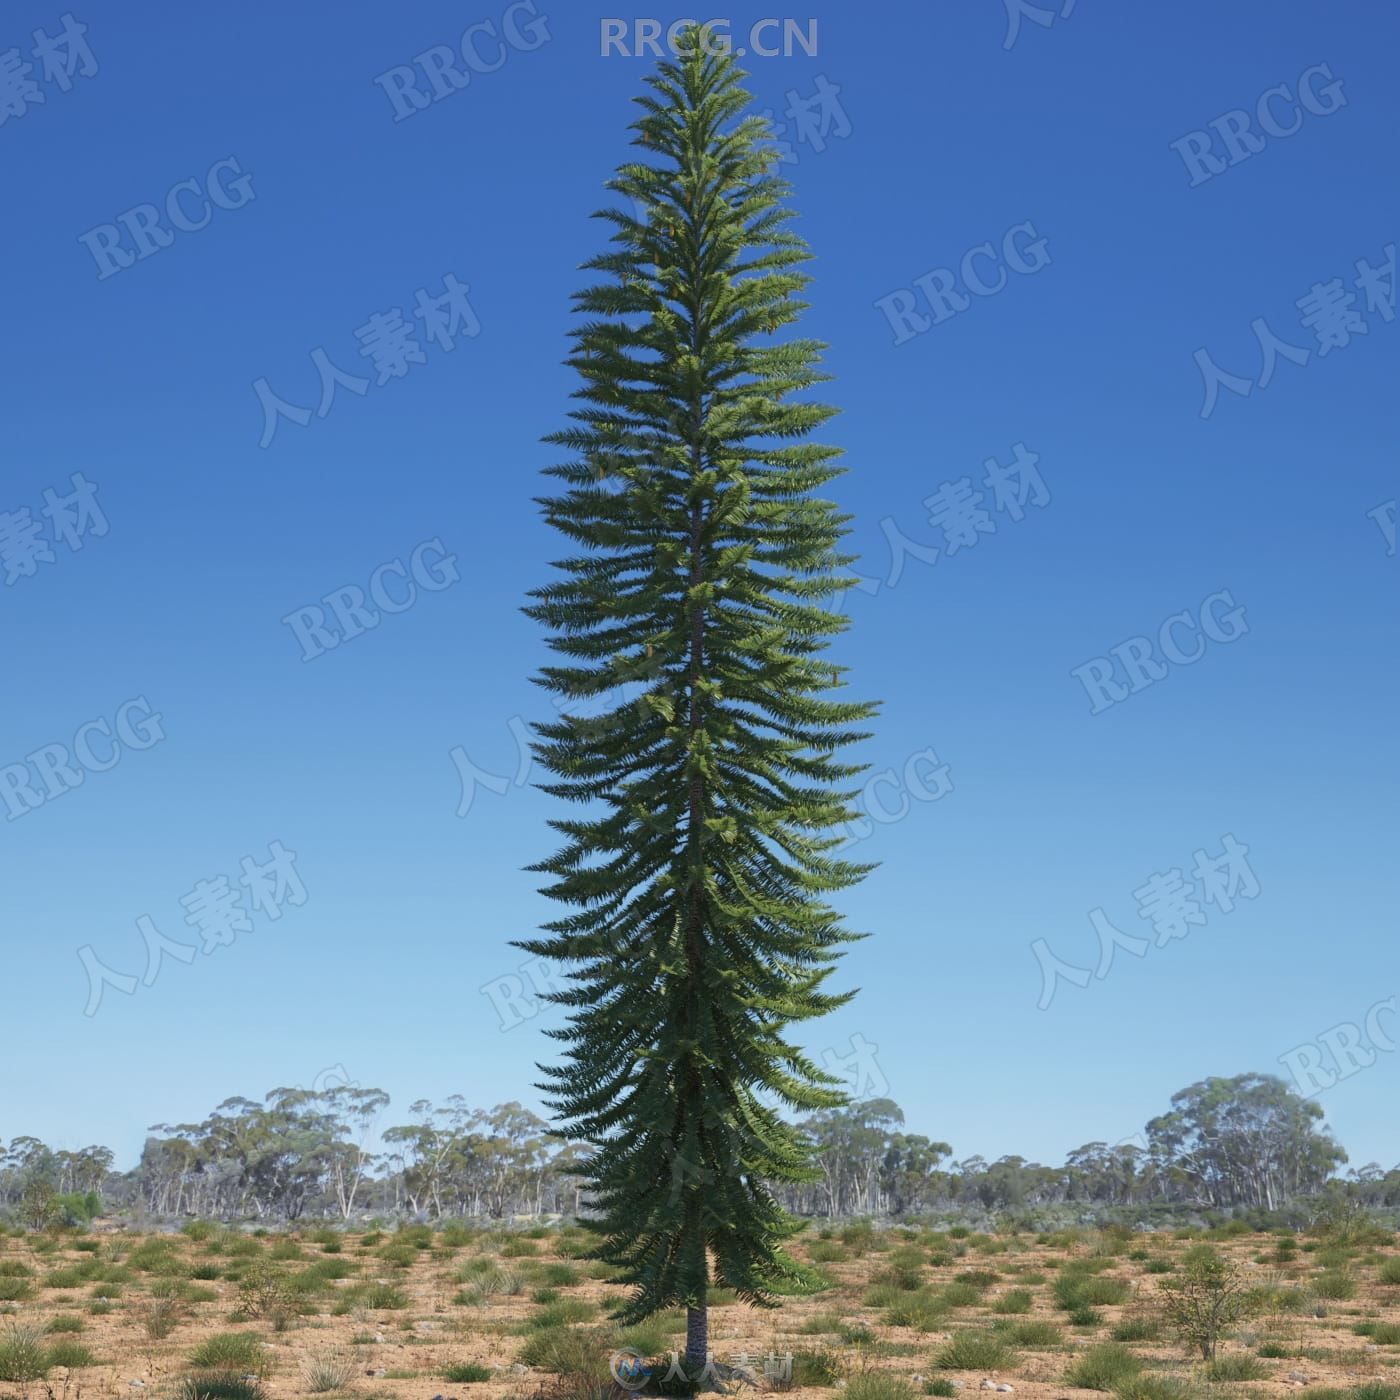 44组高品质澳大利亚特有植物树木相关3D模型合集 Evermotion Archmodels第238季